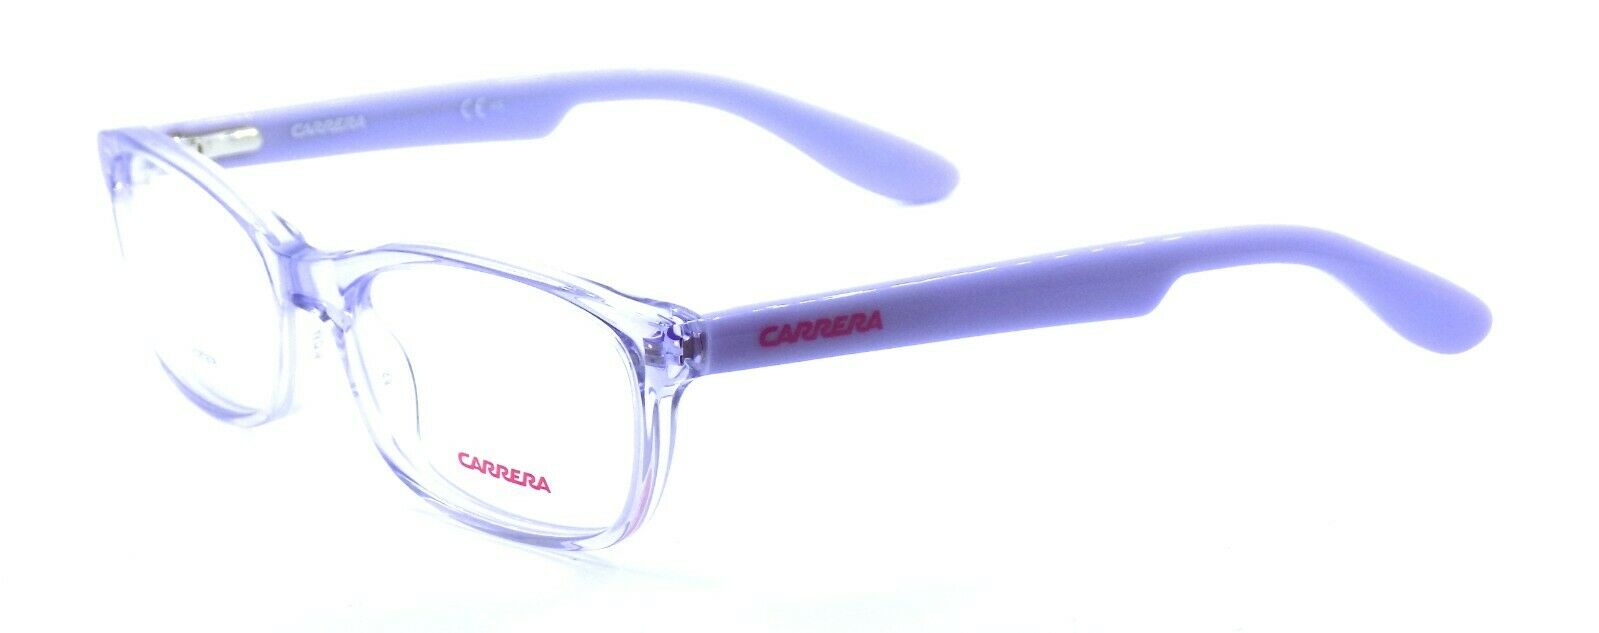 1-Carrera Carrerino 56 TSV Kids' Eyeglasses Frames 48-16-125 Lilac + CASE-762753804327-IKSpecs